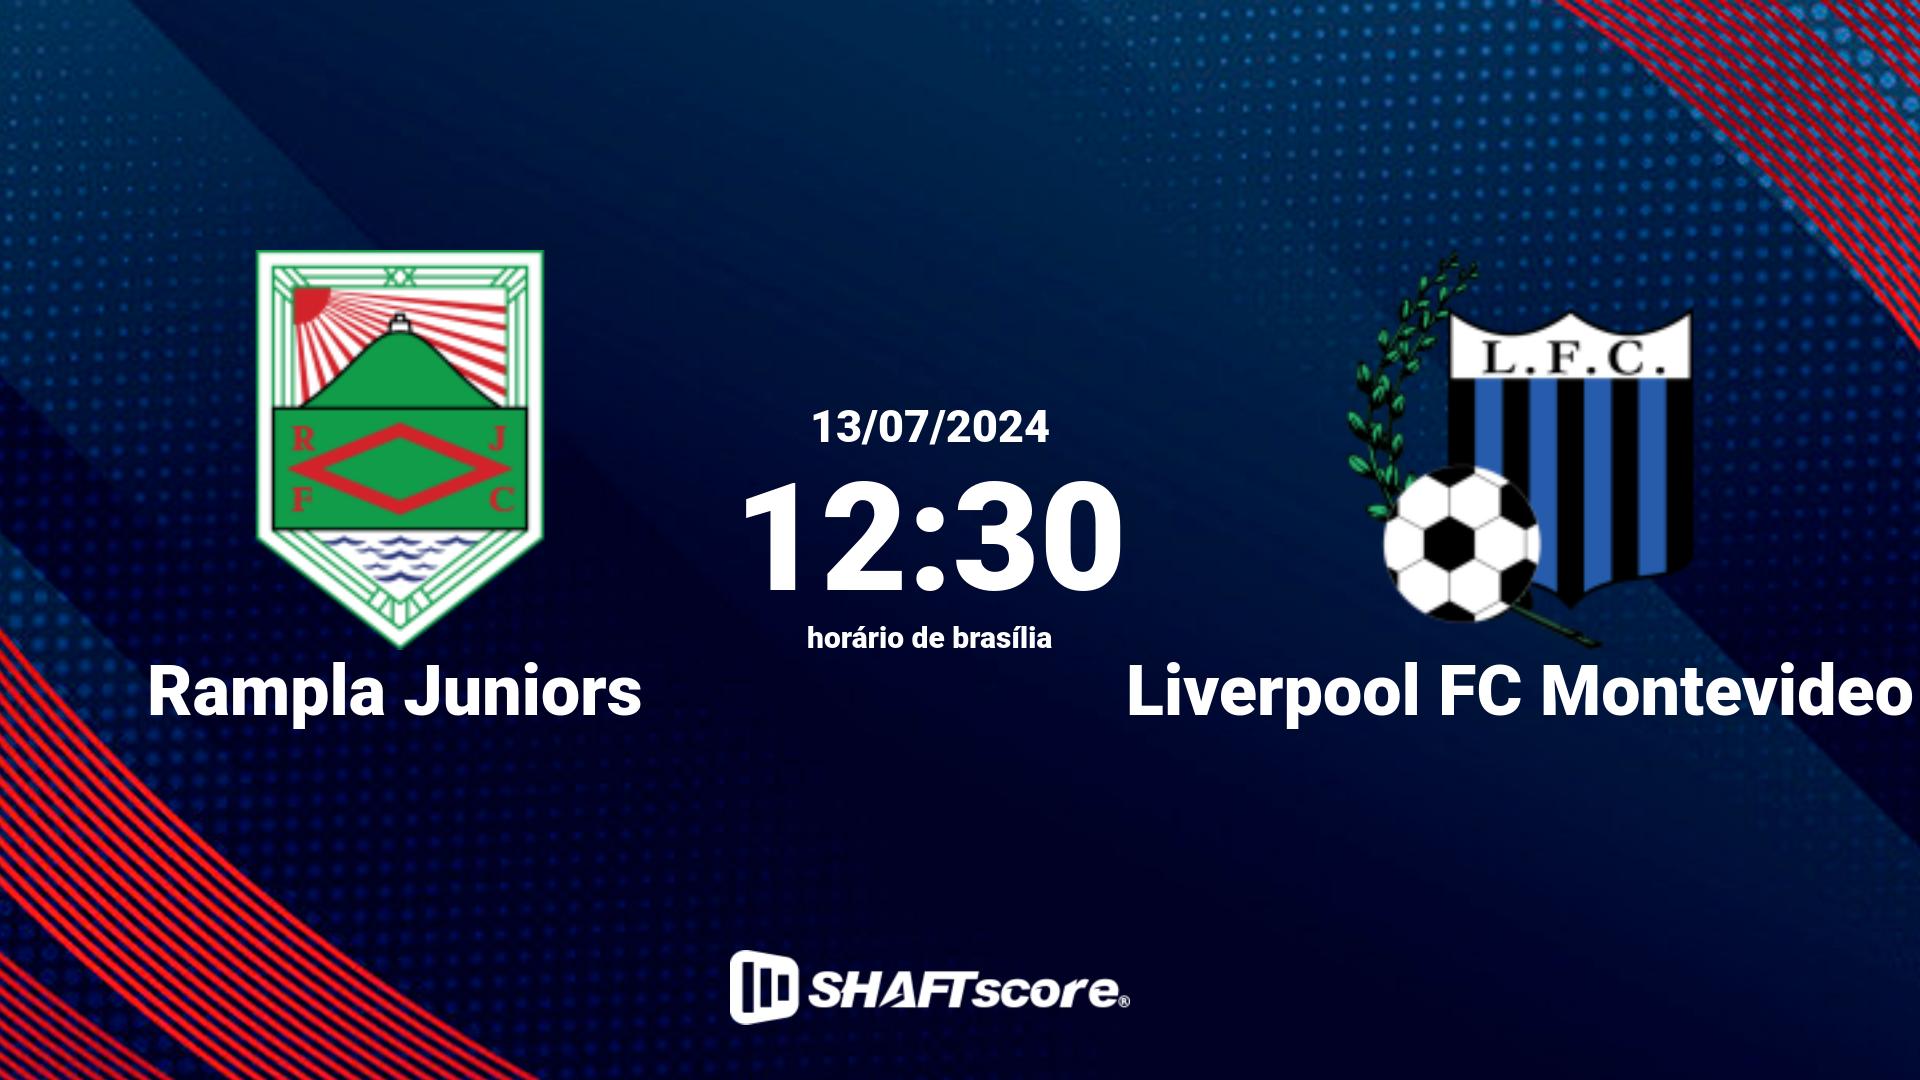 Estatísticas do jogo Rampla Juniors vs Liverpool FC Montevideo 13.07 12:30